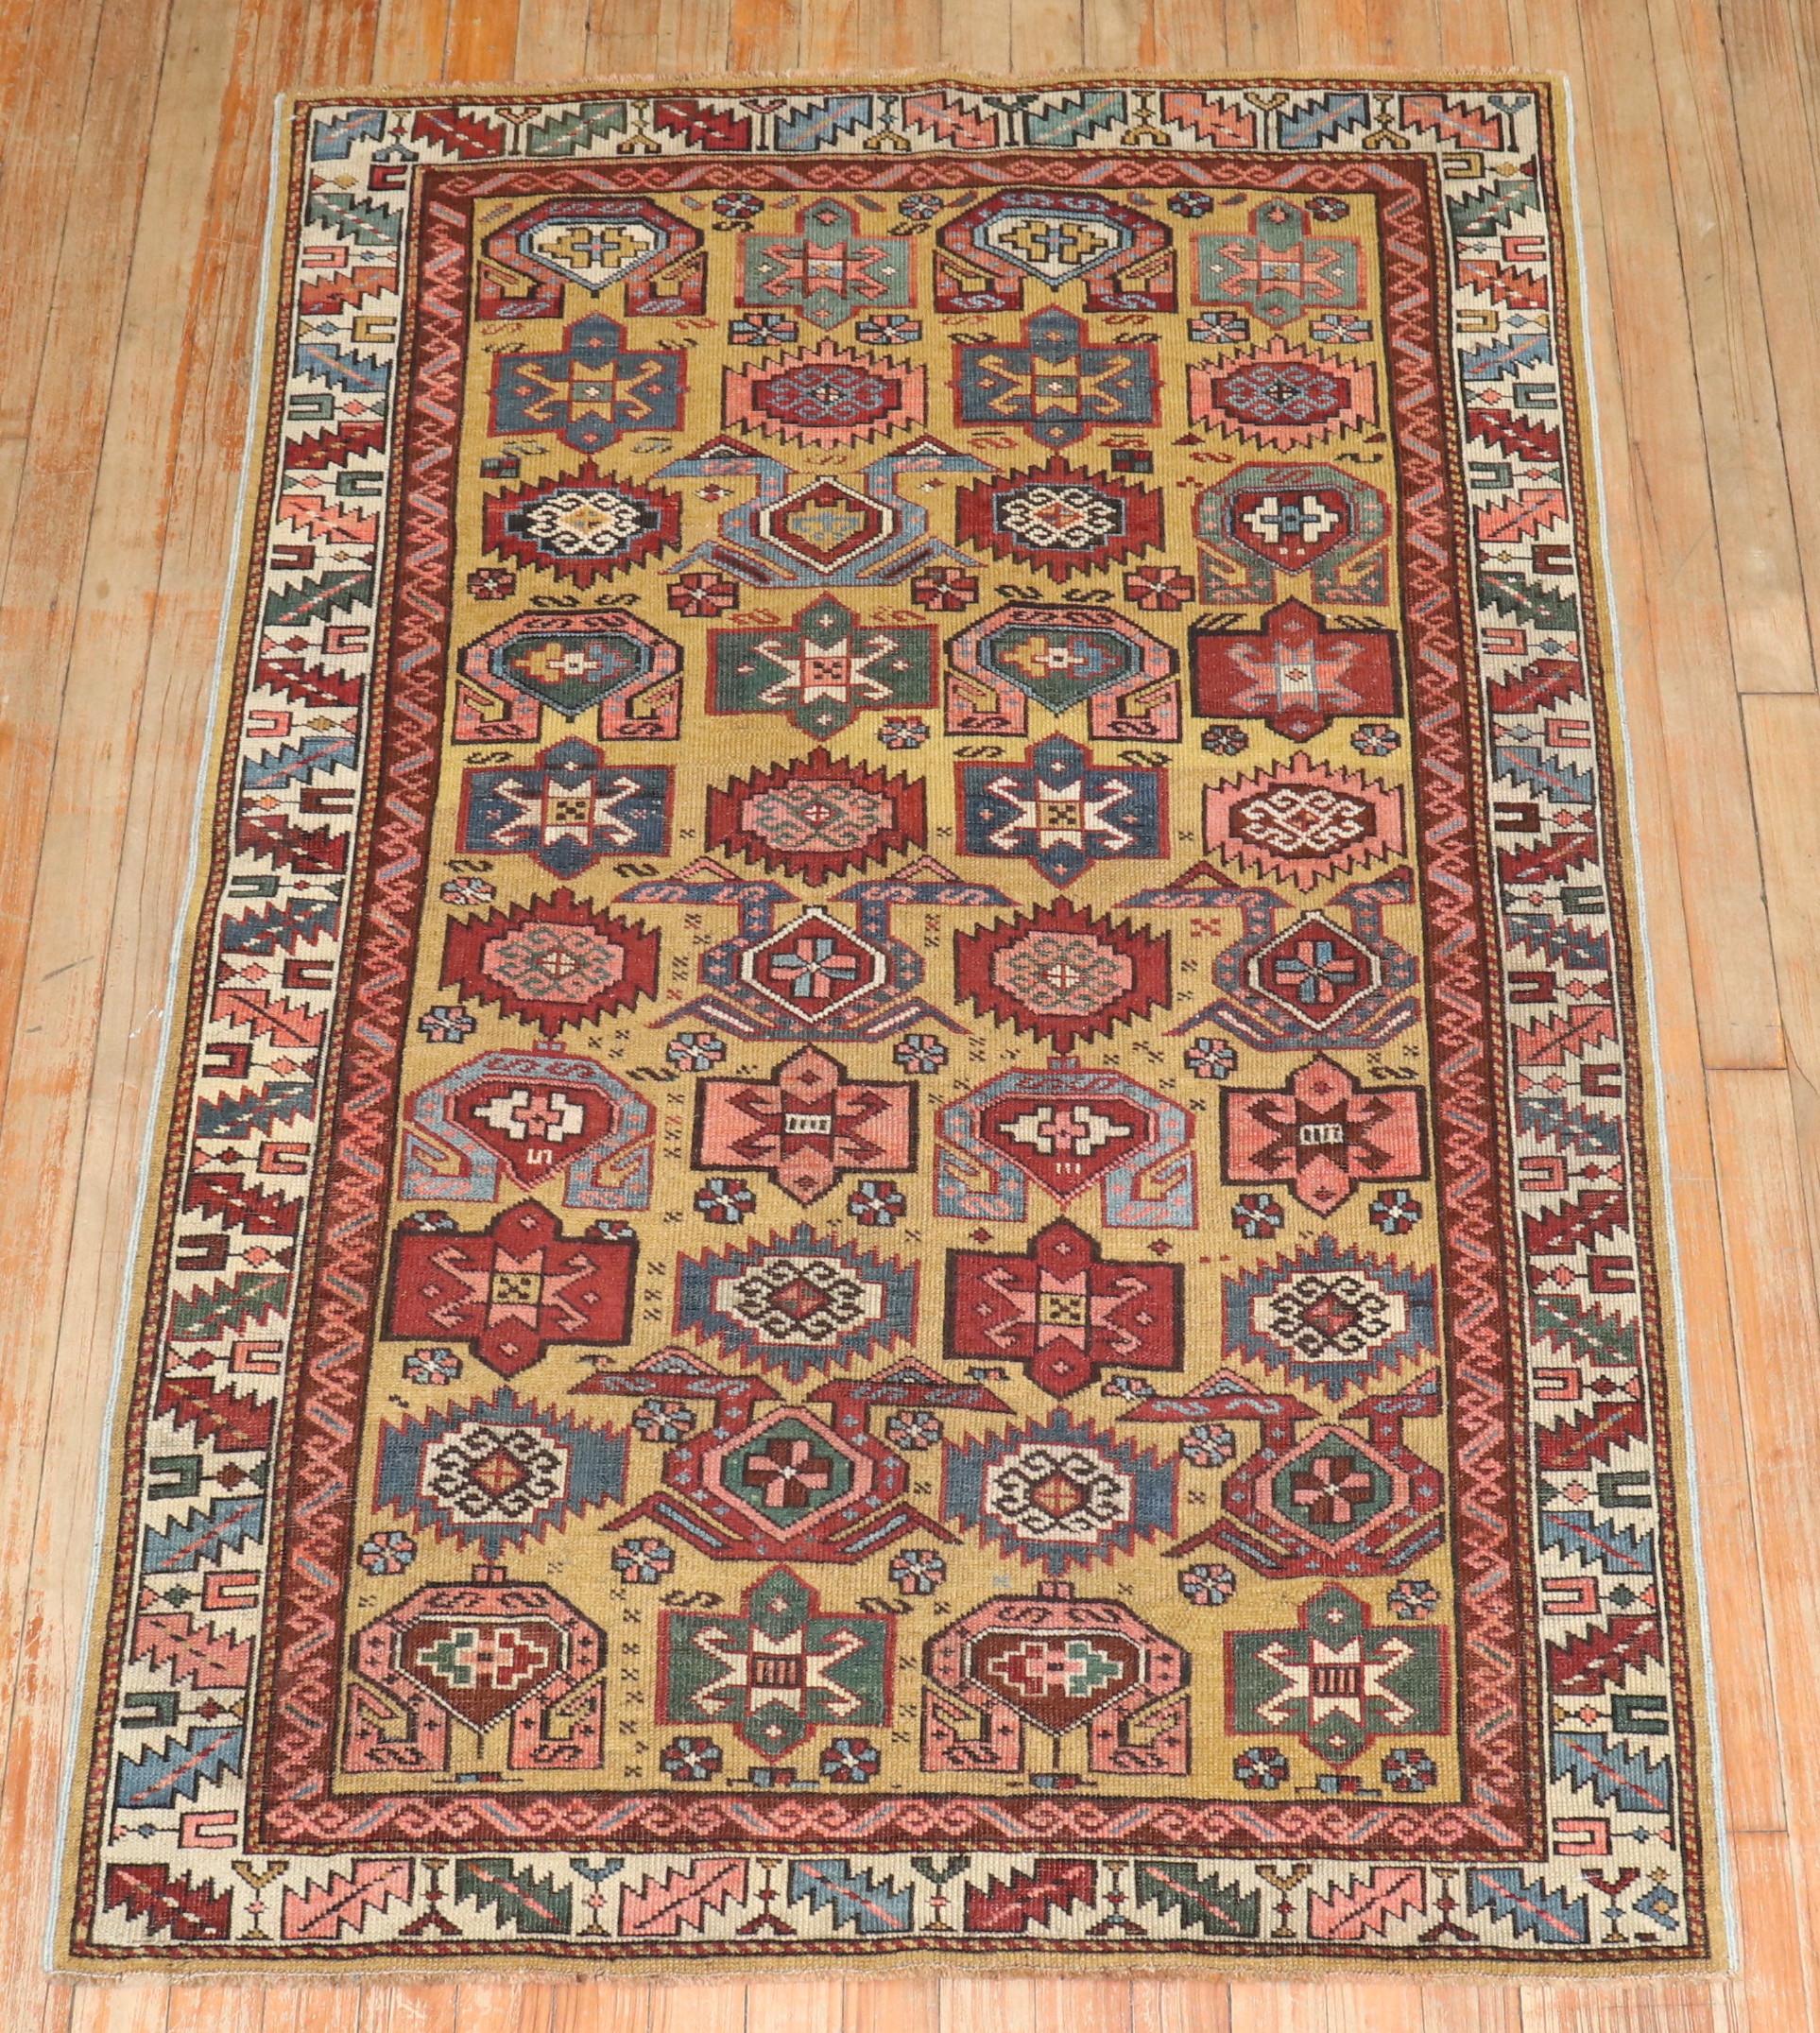 Ein authentischer kaukasischer Kuba-Teppich aus dem späten 19. Jahrhundert mit einem senffarbenen Grund.

3'5'' x 5'1''